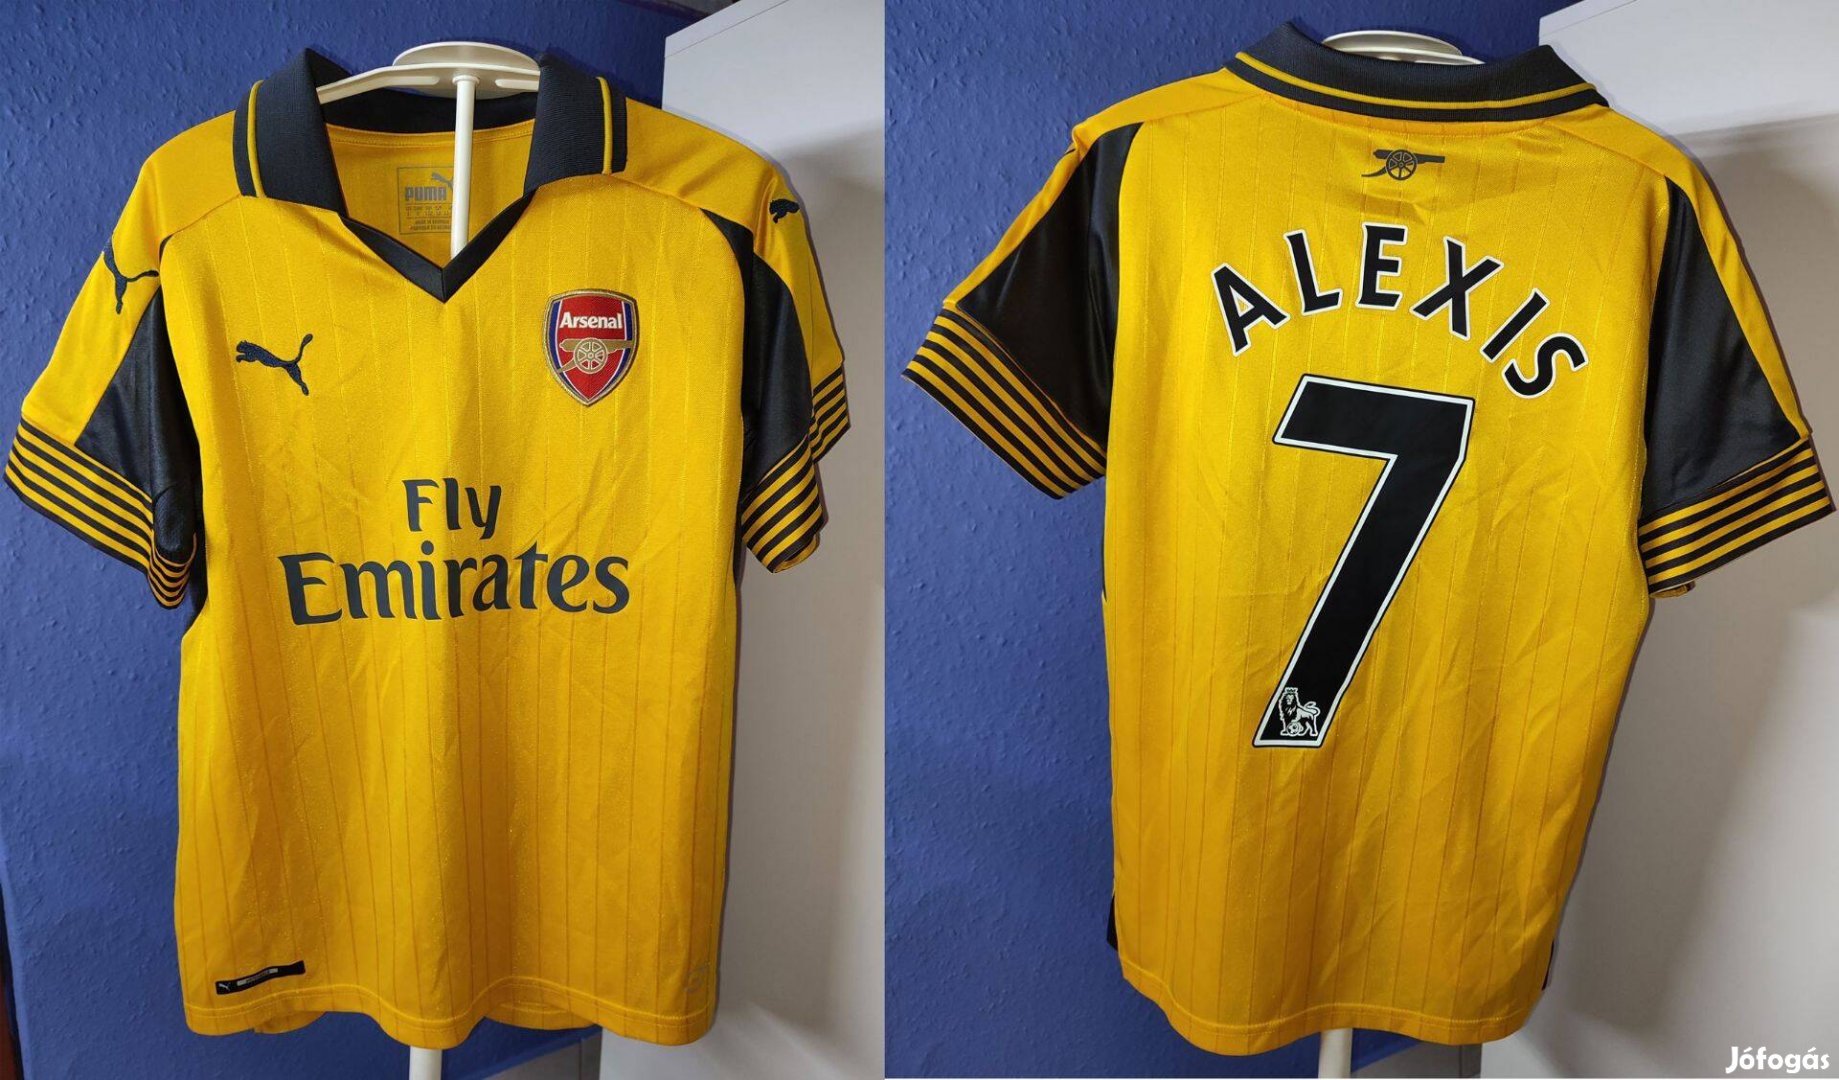 Arsenal - Alexis Sanchez eredeti Puma gyerek focimez (152)